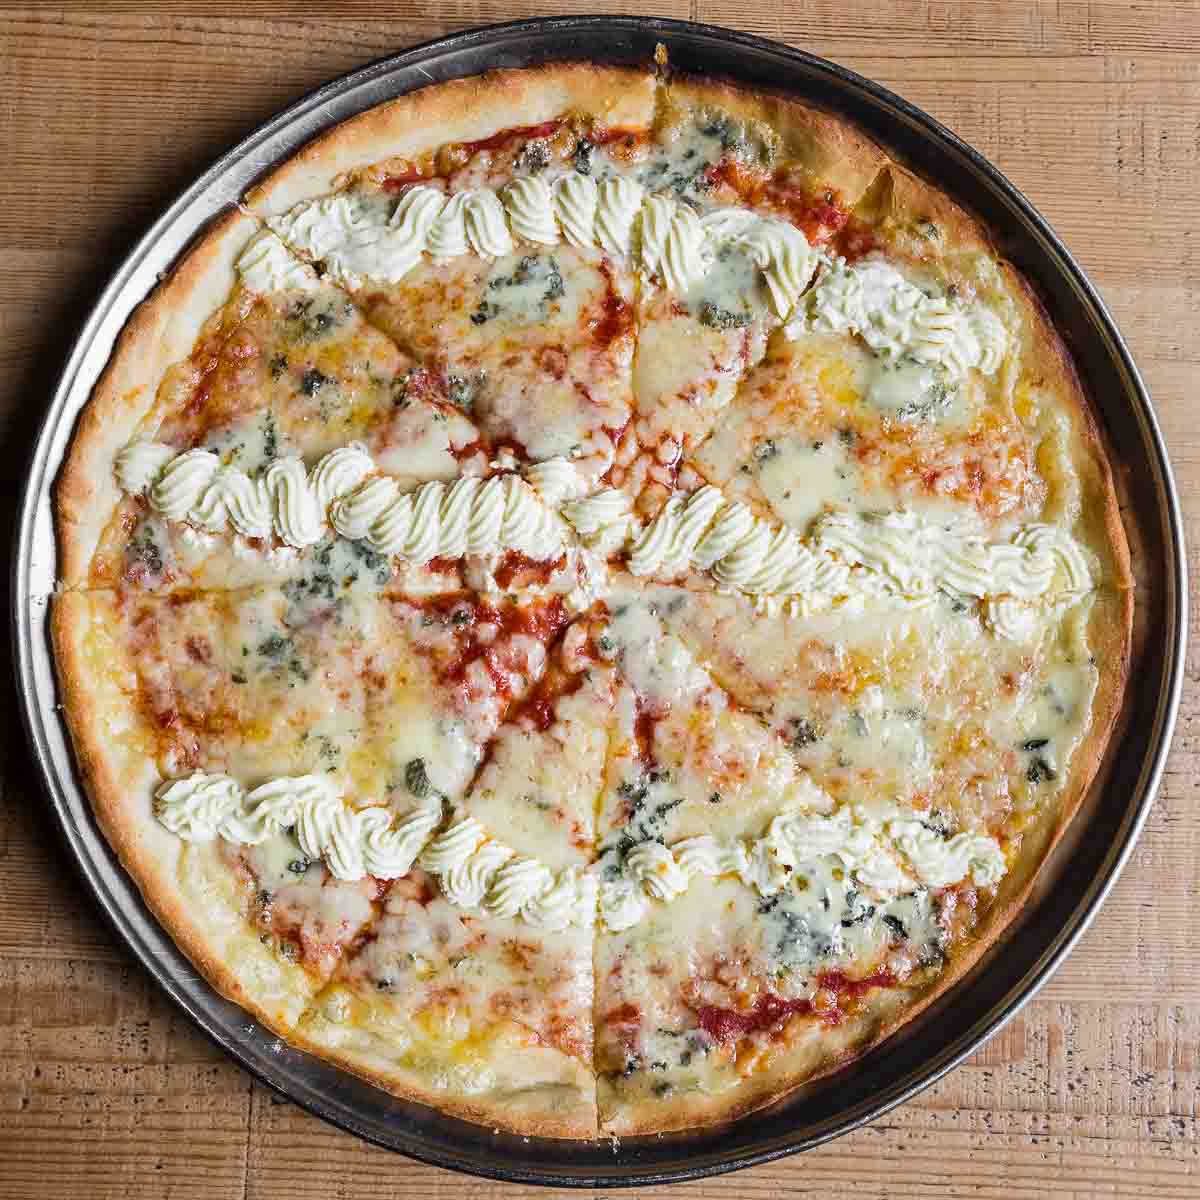 26. 3가지 치즈: 토마토, 치즈, 에담, 로크포르, 필라델피아